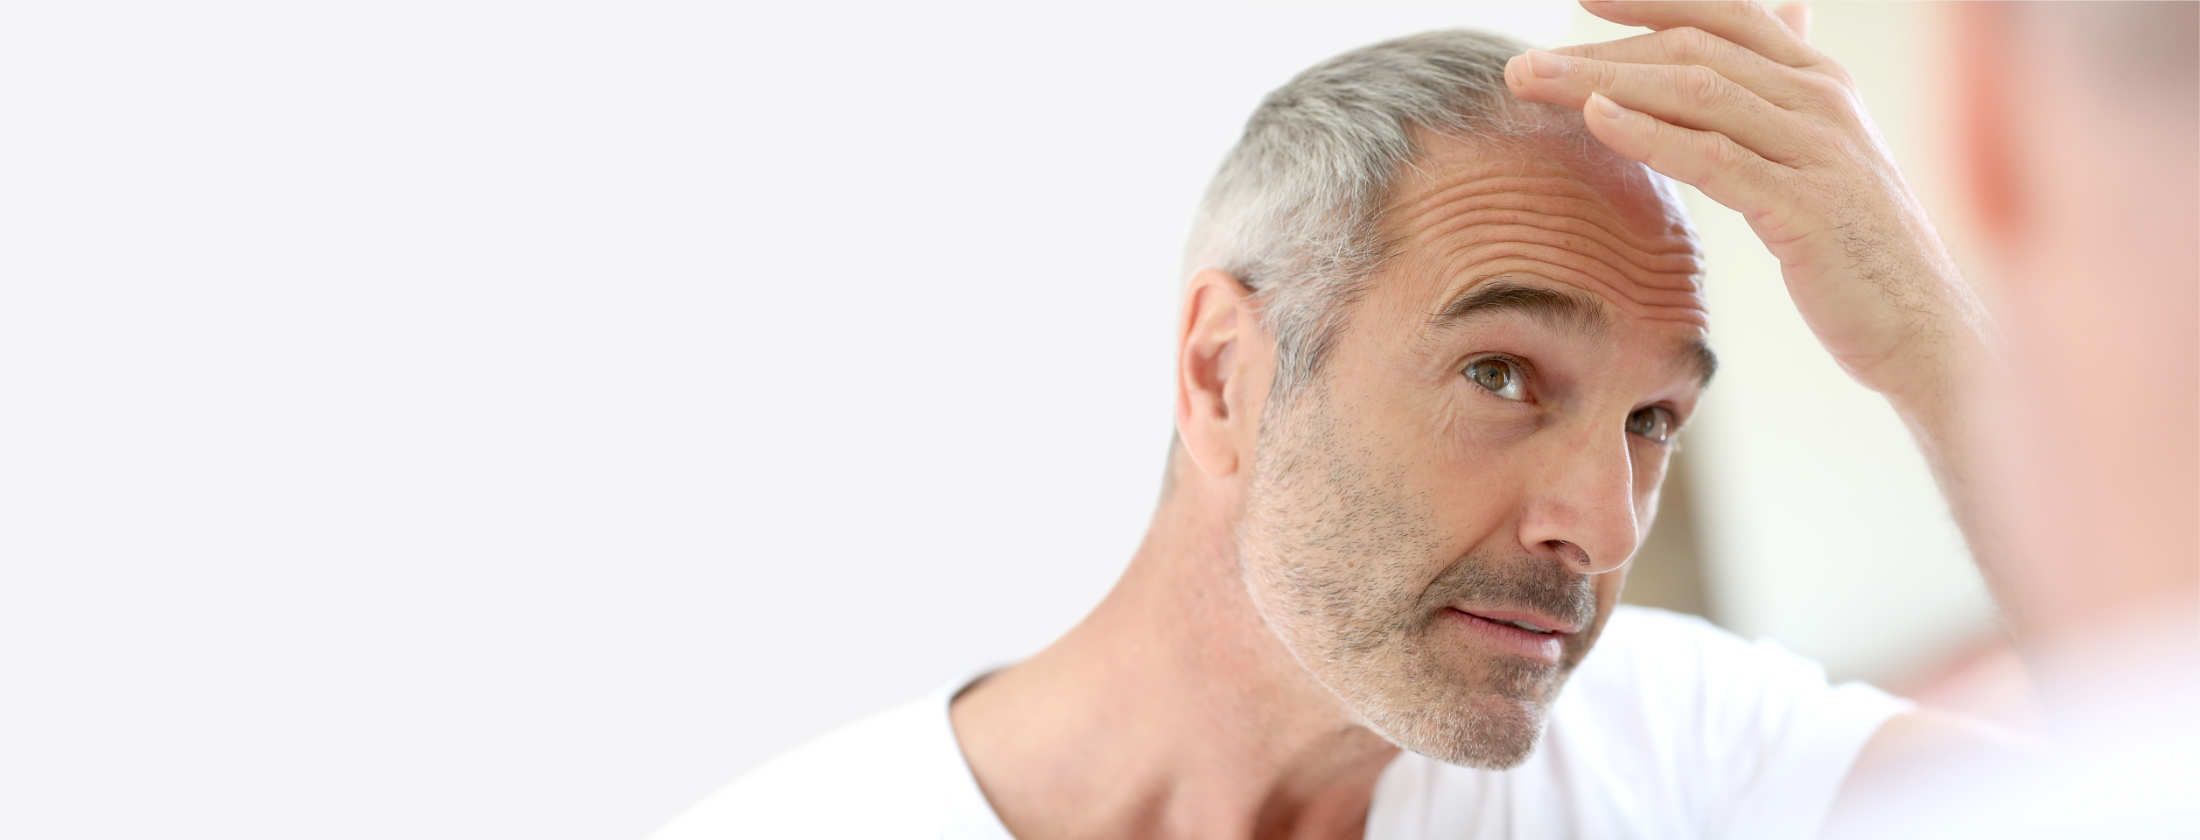 Grauhaariger Mann begutachtet sein rares Kopfhaar im Spiegel. Er ist in weißes Shirt gekleidet und denkt über eine Behandlung gegen Haarausfall nach. Anregung von Haarwachstum mit einem Haarwachstum-Serum. Mehr Haare würden seine Glatze verdecken.